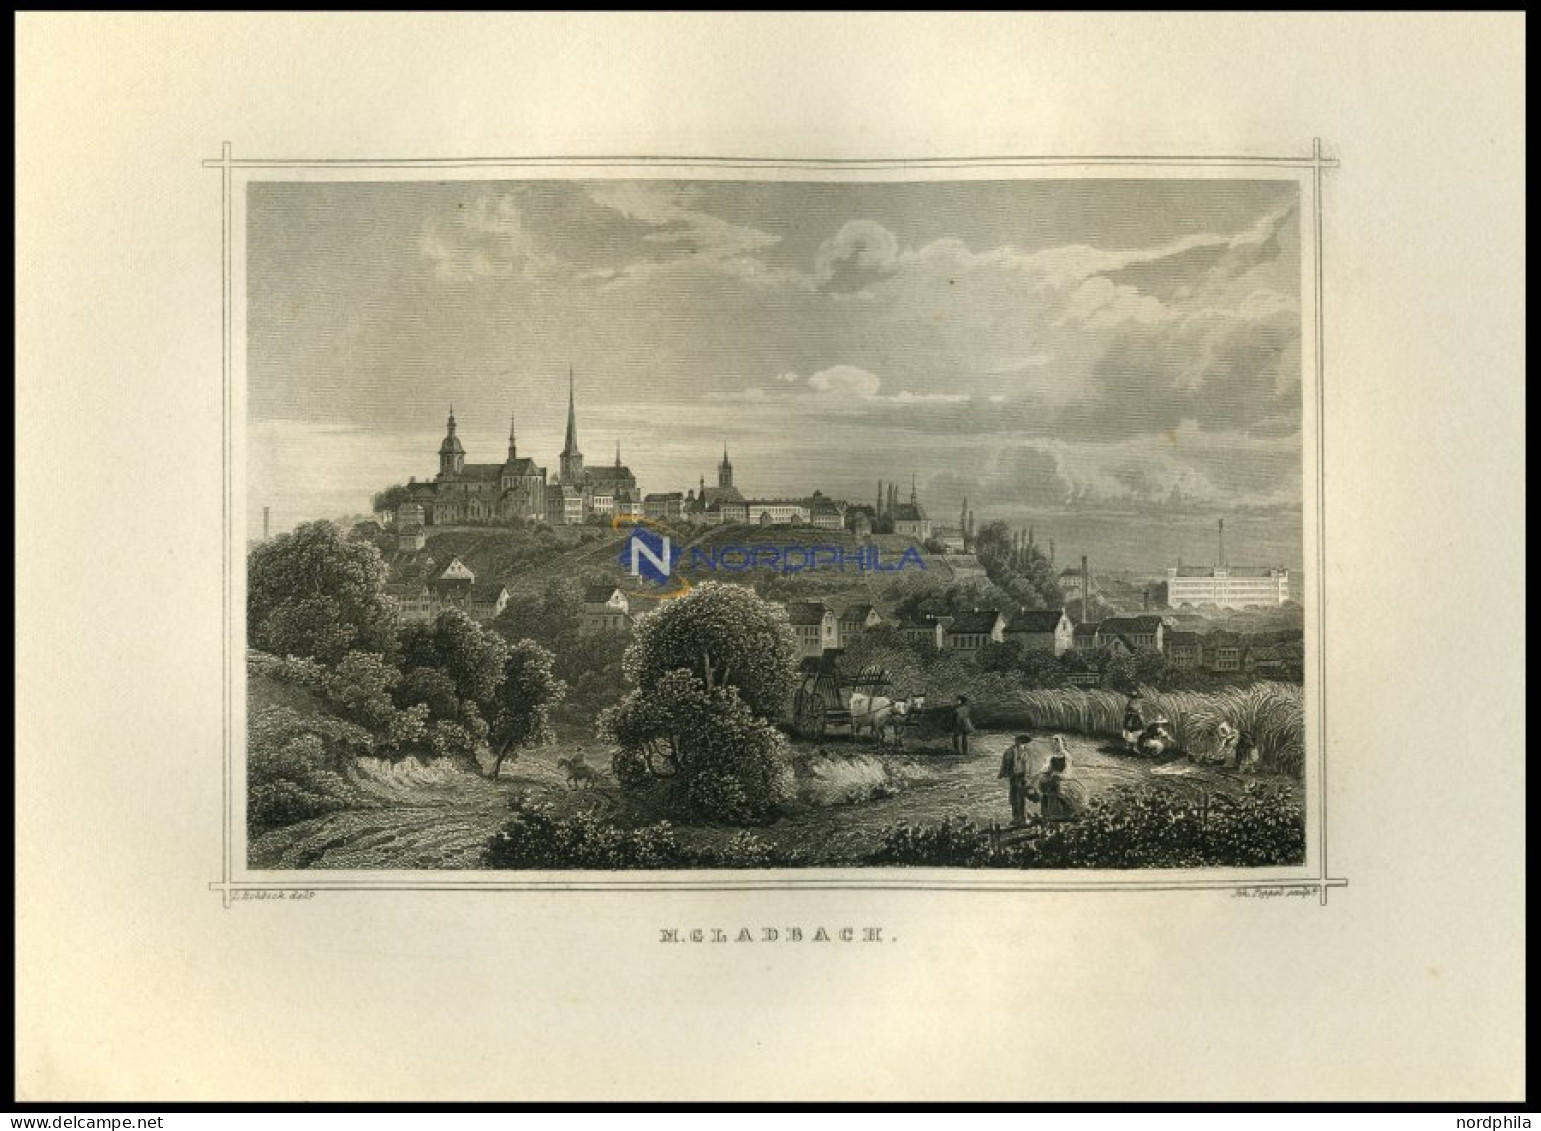 GLADBACH, Gesamtansicht Mit Hübscher Personenstaffage Im Vordergrund, Stahlstich Von Rohbock/Poppel Um 1850 - Stiche & Gravuren